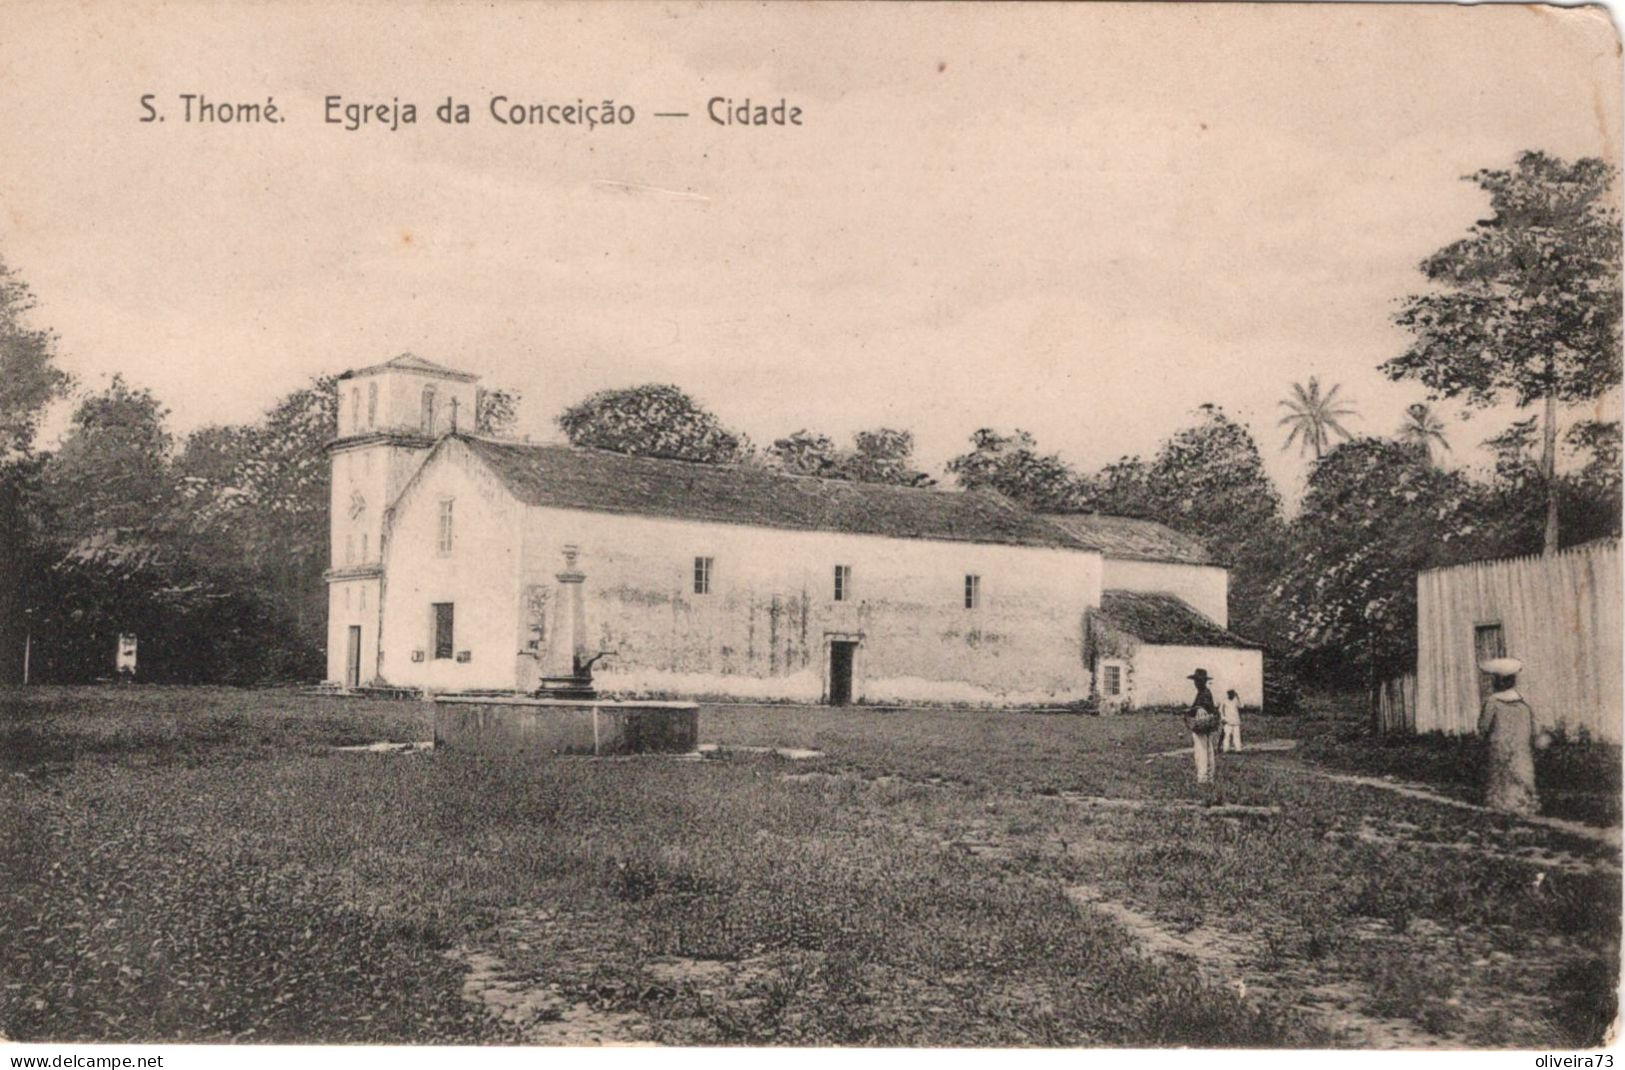 SÃO TOME E PRINCIPE - S. THOMÉ - Igreja Da Conceição - Cidade - São Tomé Und Príncipe